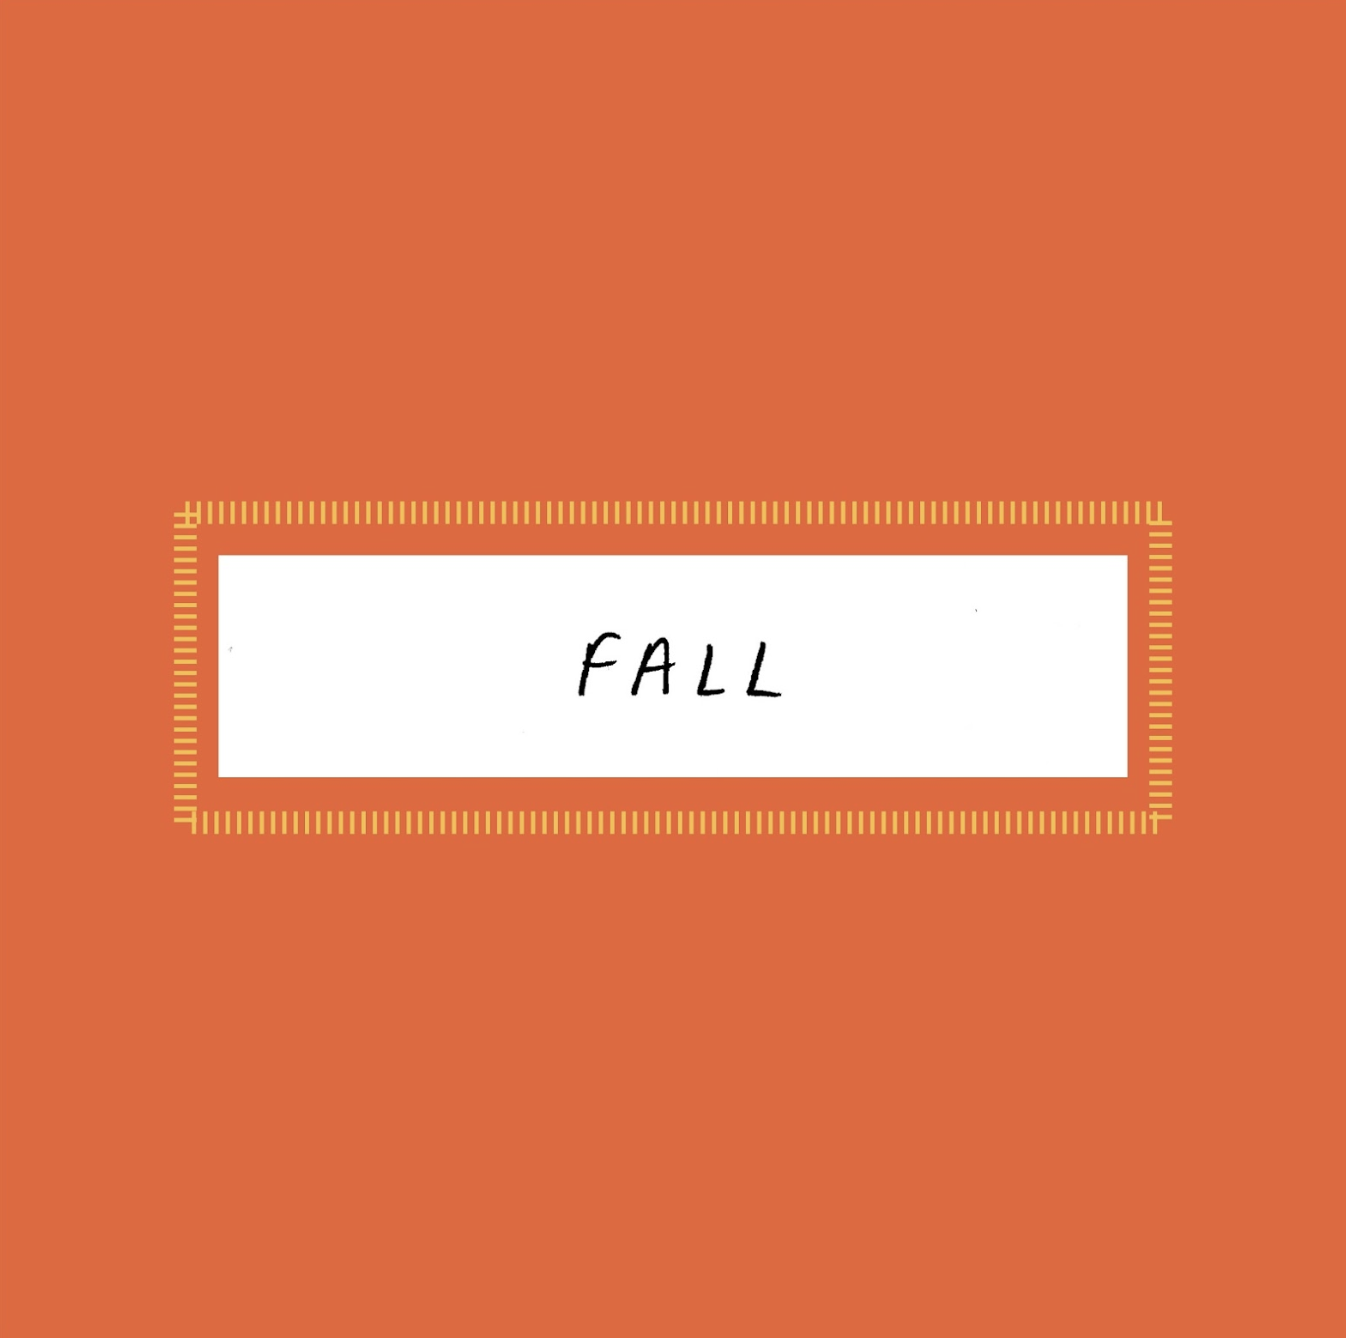 Fall by Emma Bruckner